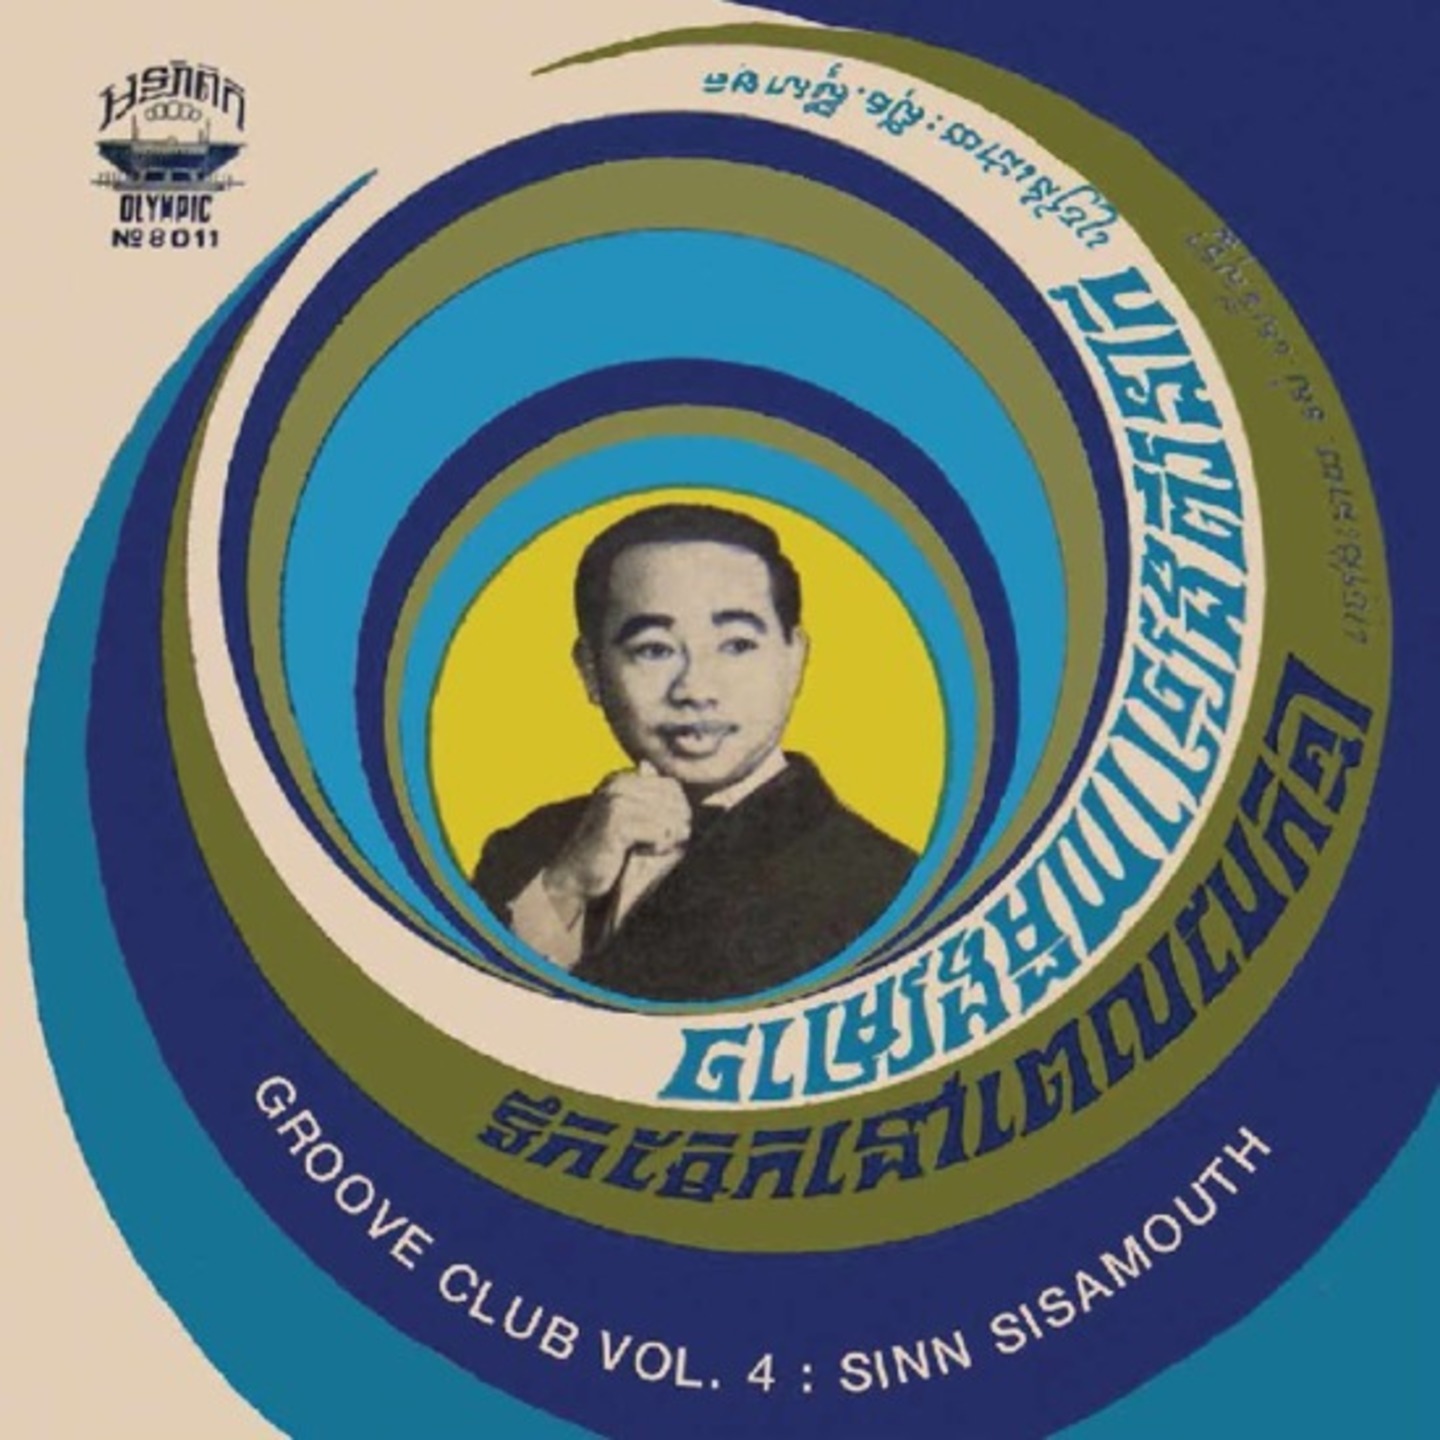 SINN SISAMOUTH - Groove Club Vol. 4: Sinn Sisamouth Vol. 1 LP